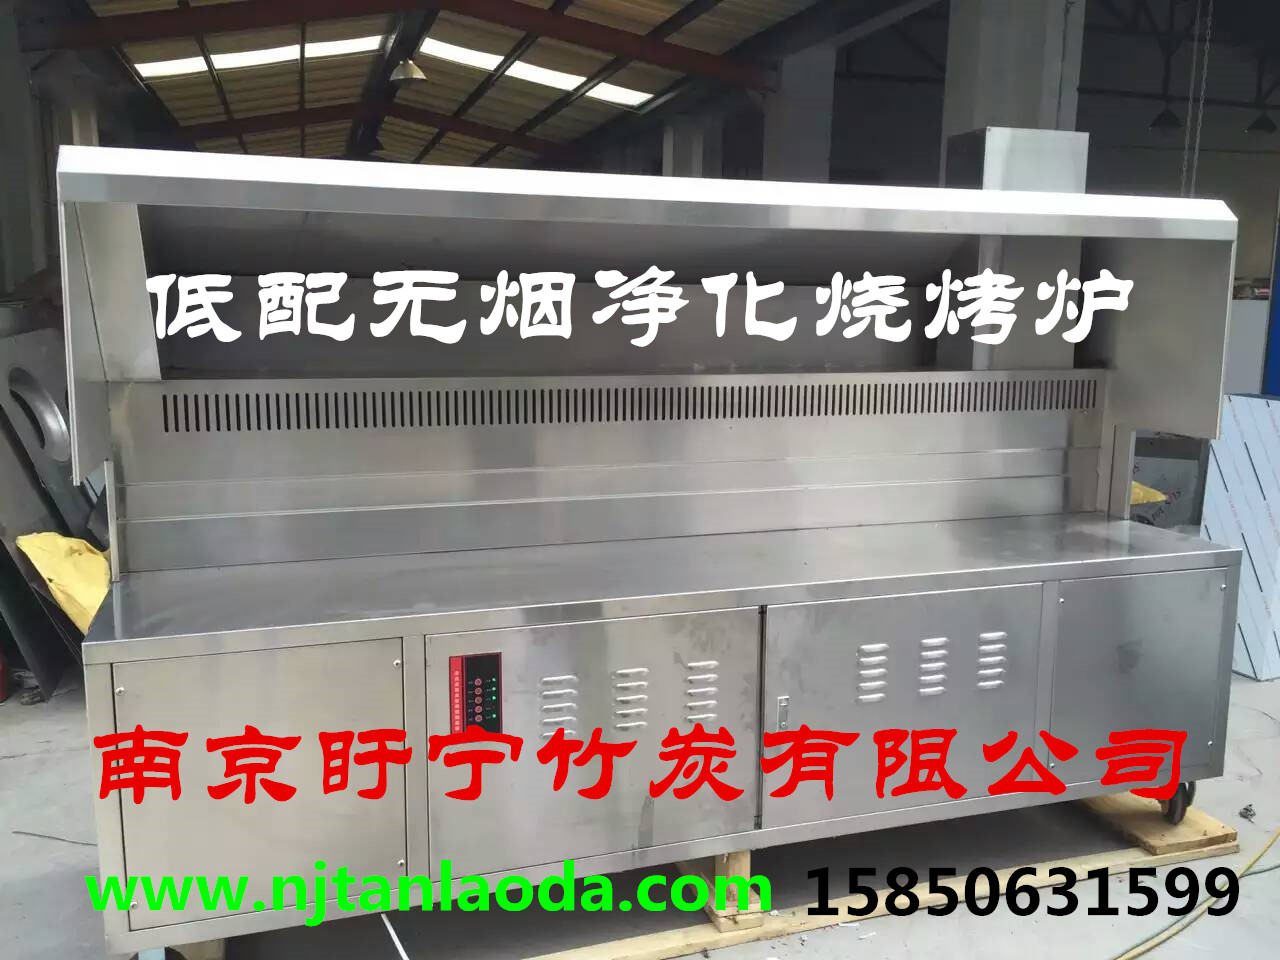 厂家南京烧烤设备 南京烧烤炉生产厂家 无烟烧烤净化炉价格图片